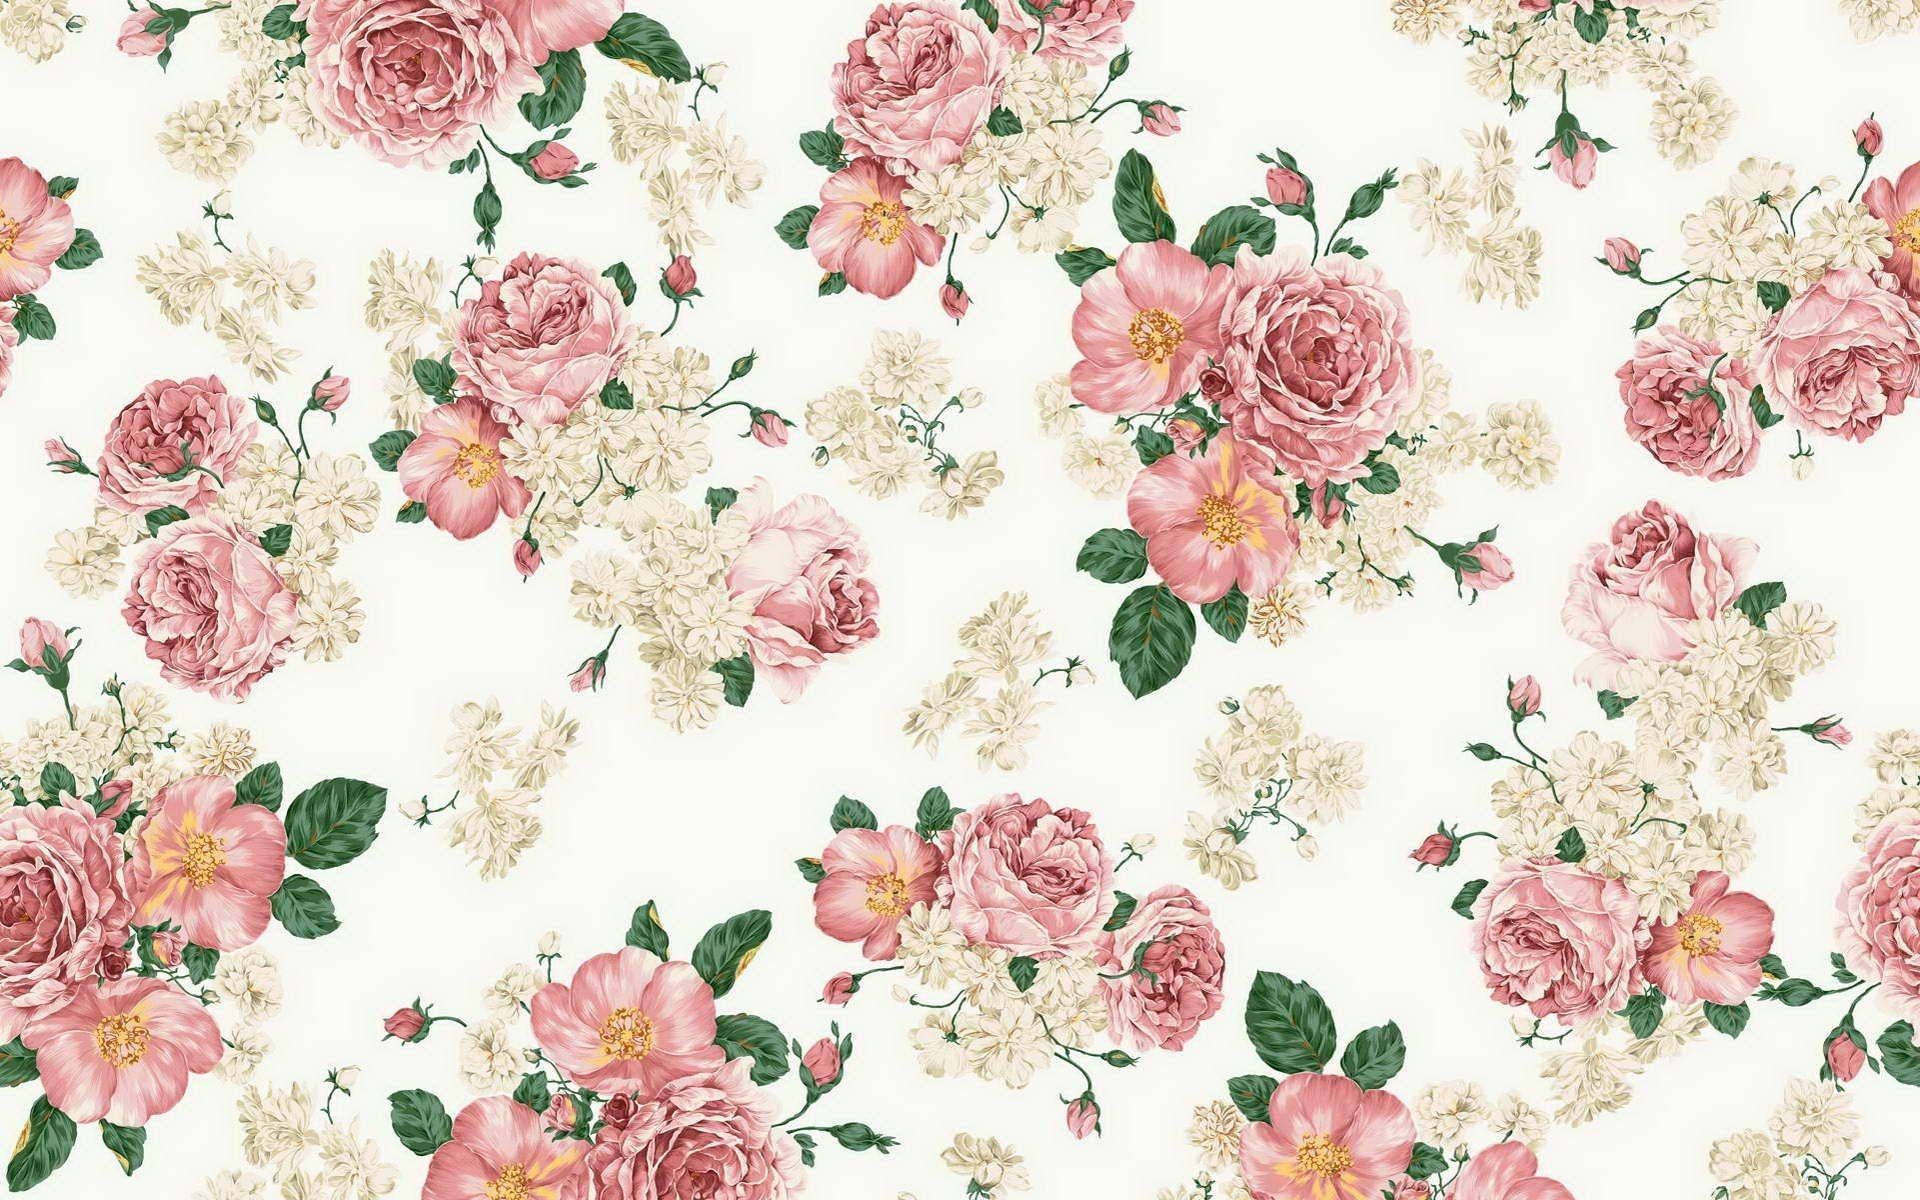 Patrónestético De Flores Vintage En Rosa Y Blanco Fondo de pantalla